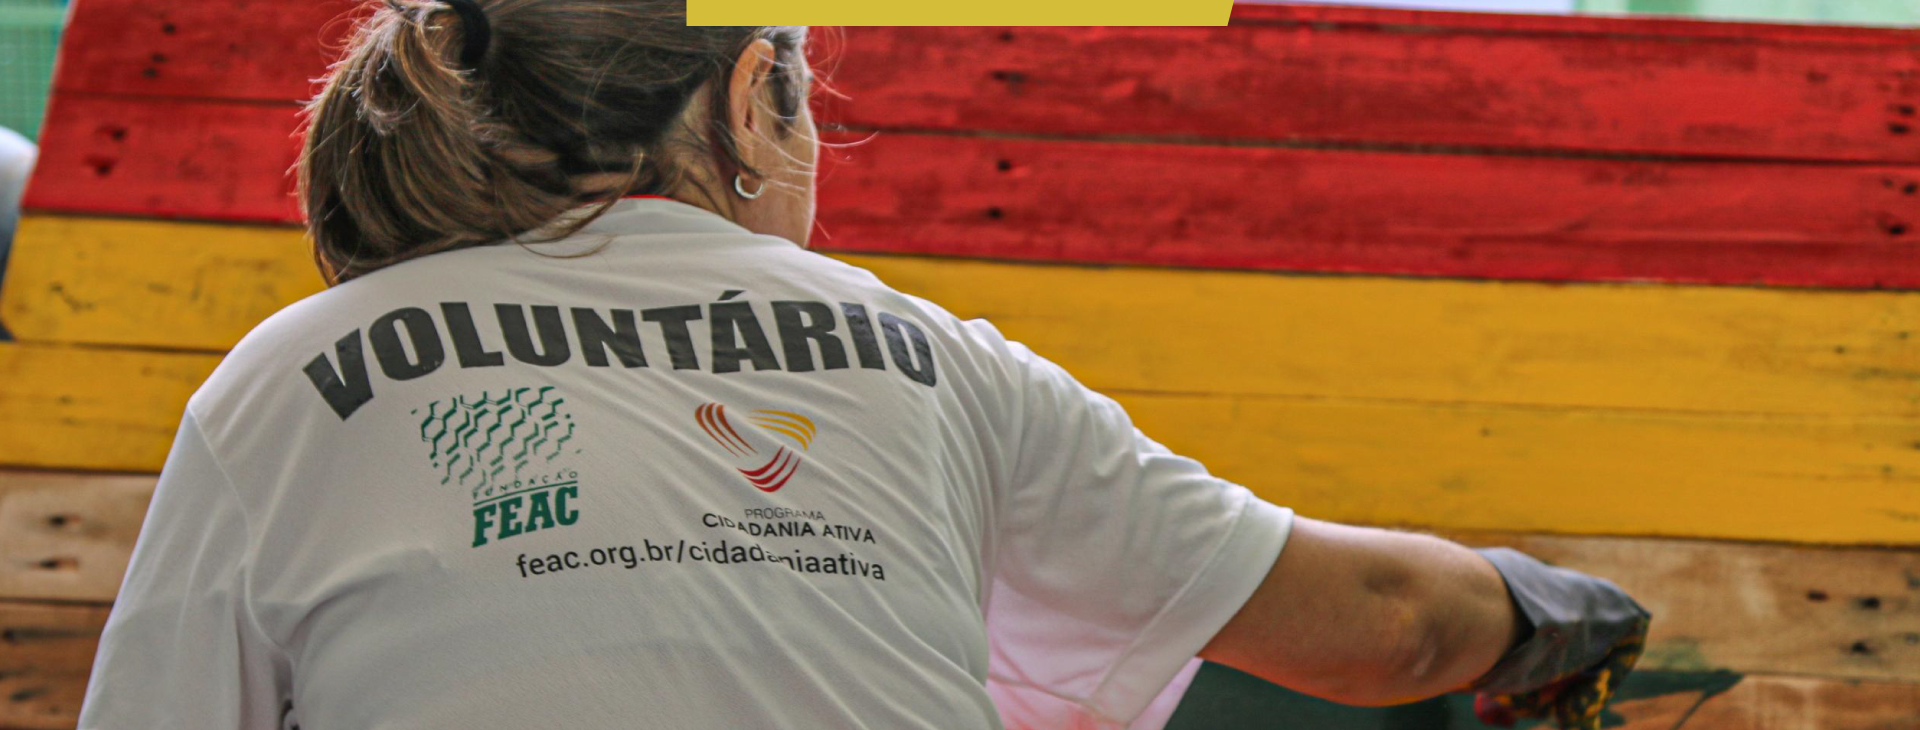 Mulher virada de costas usando camiseta escrita "voluntário" pinta painel de madeira nas cores vermelho, amarelo e verde